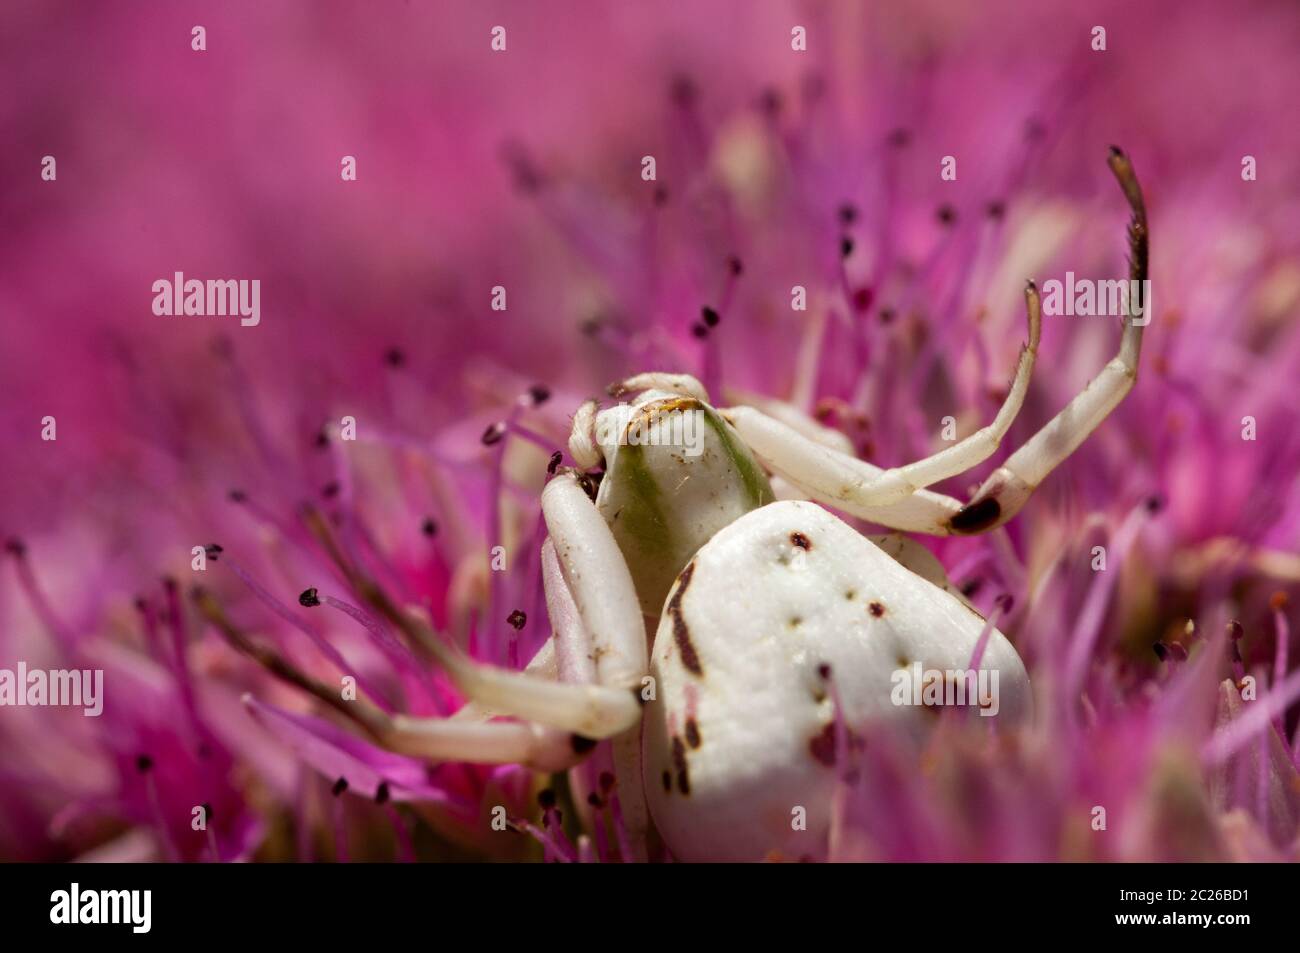 A white crab spider waits to ambush prey. Stock Photo